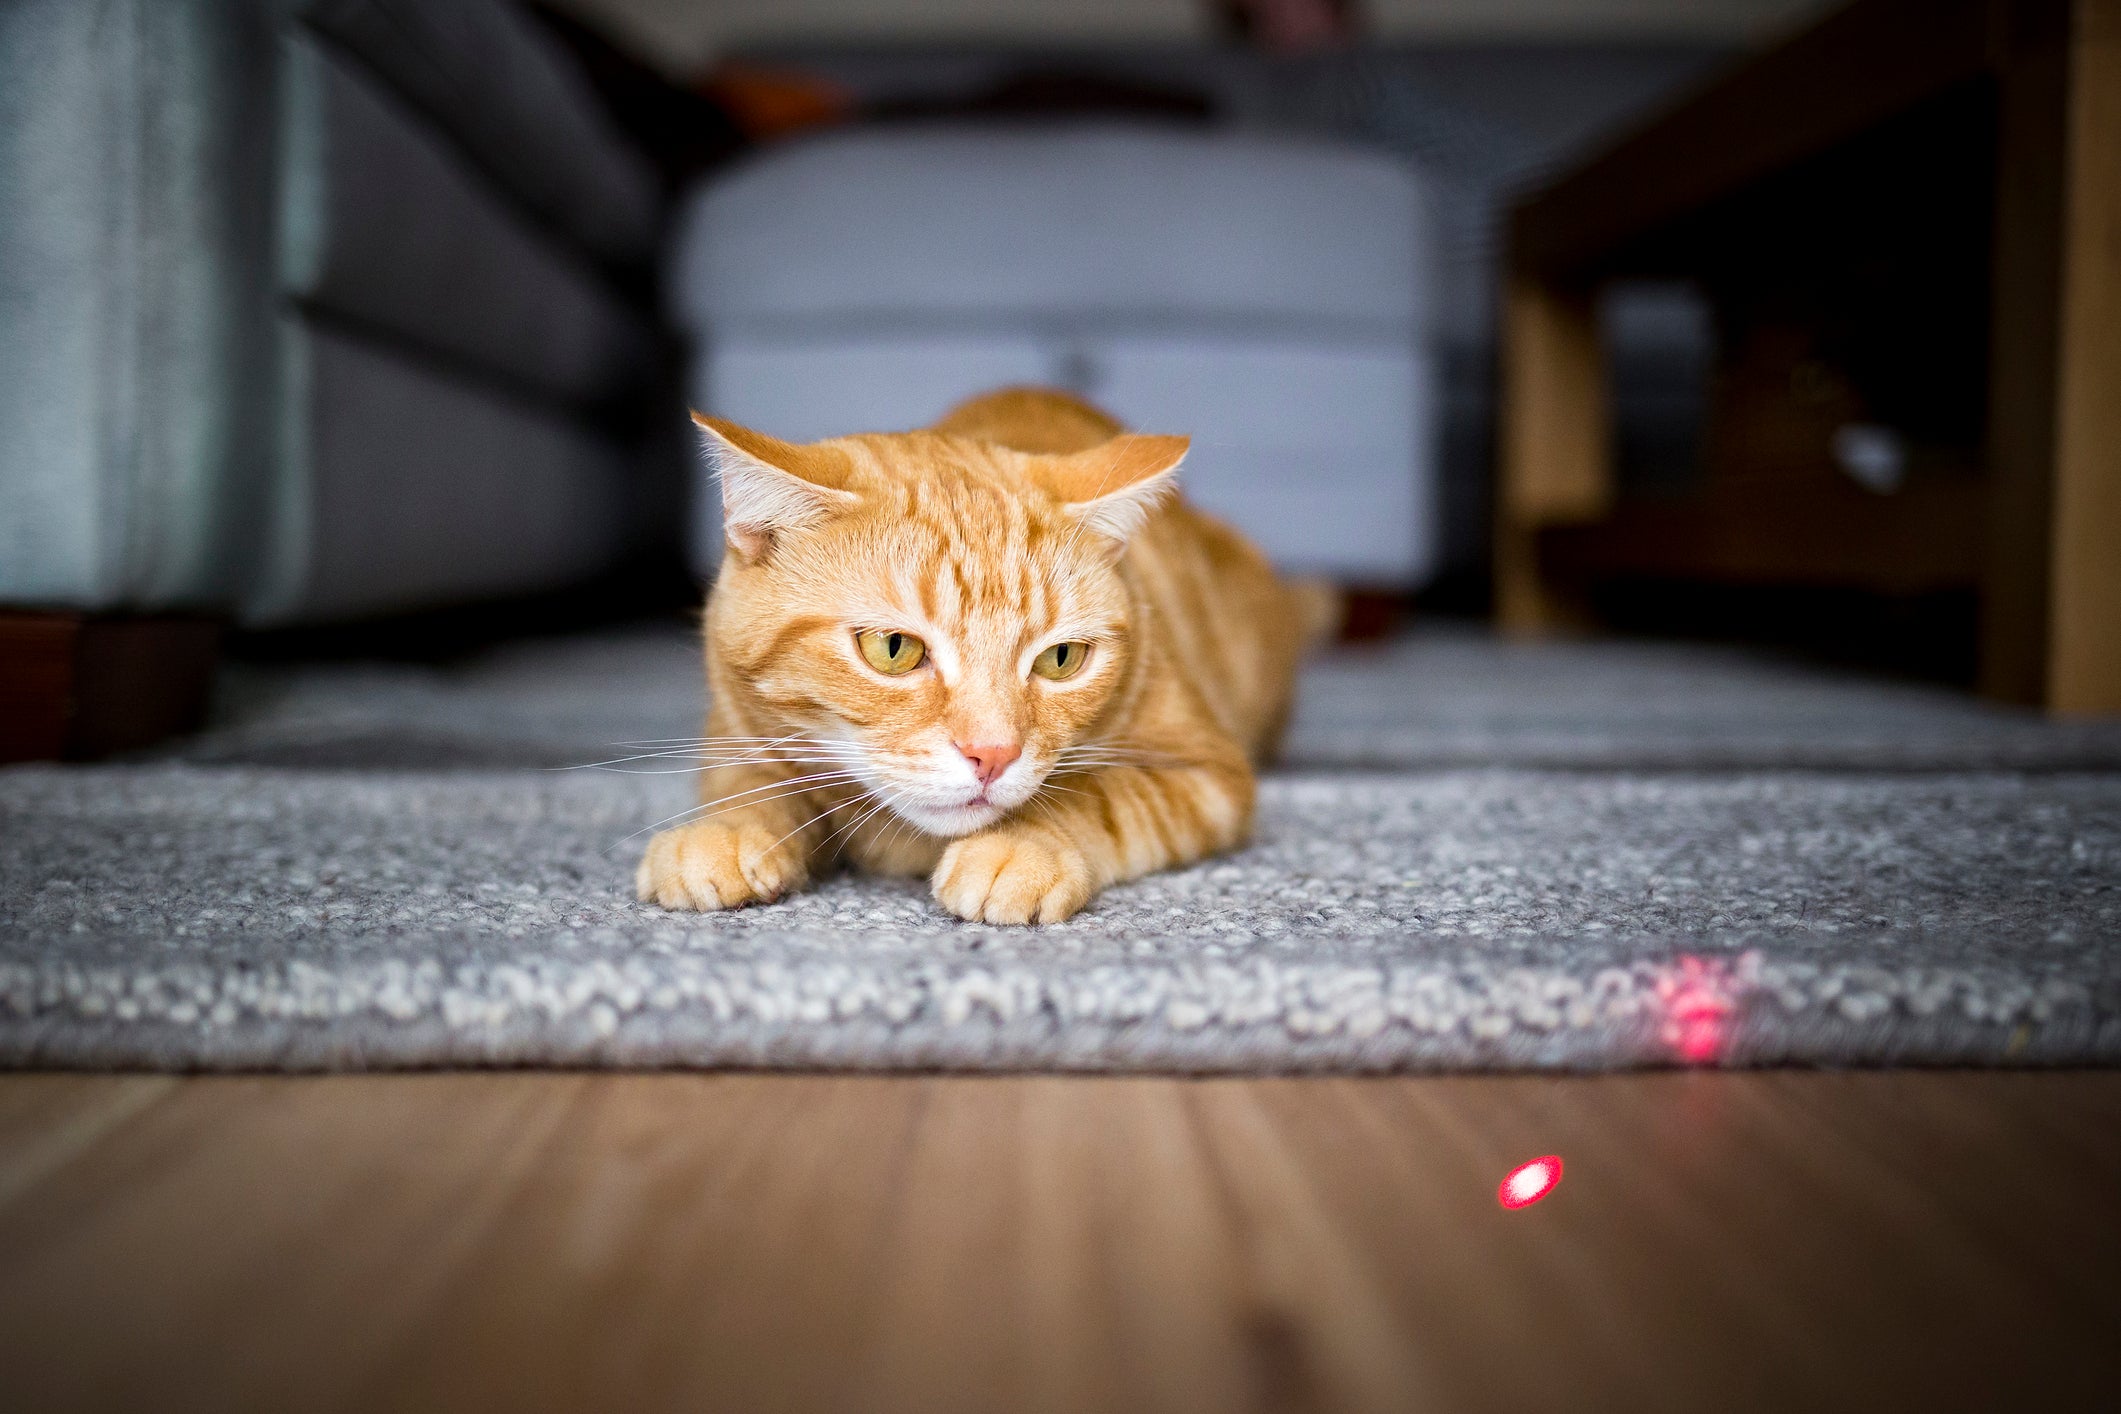 Gato concentrado olhando luz de laser no chão